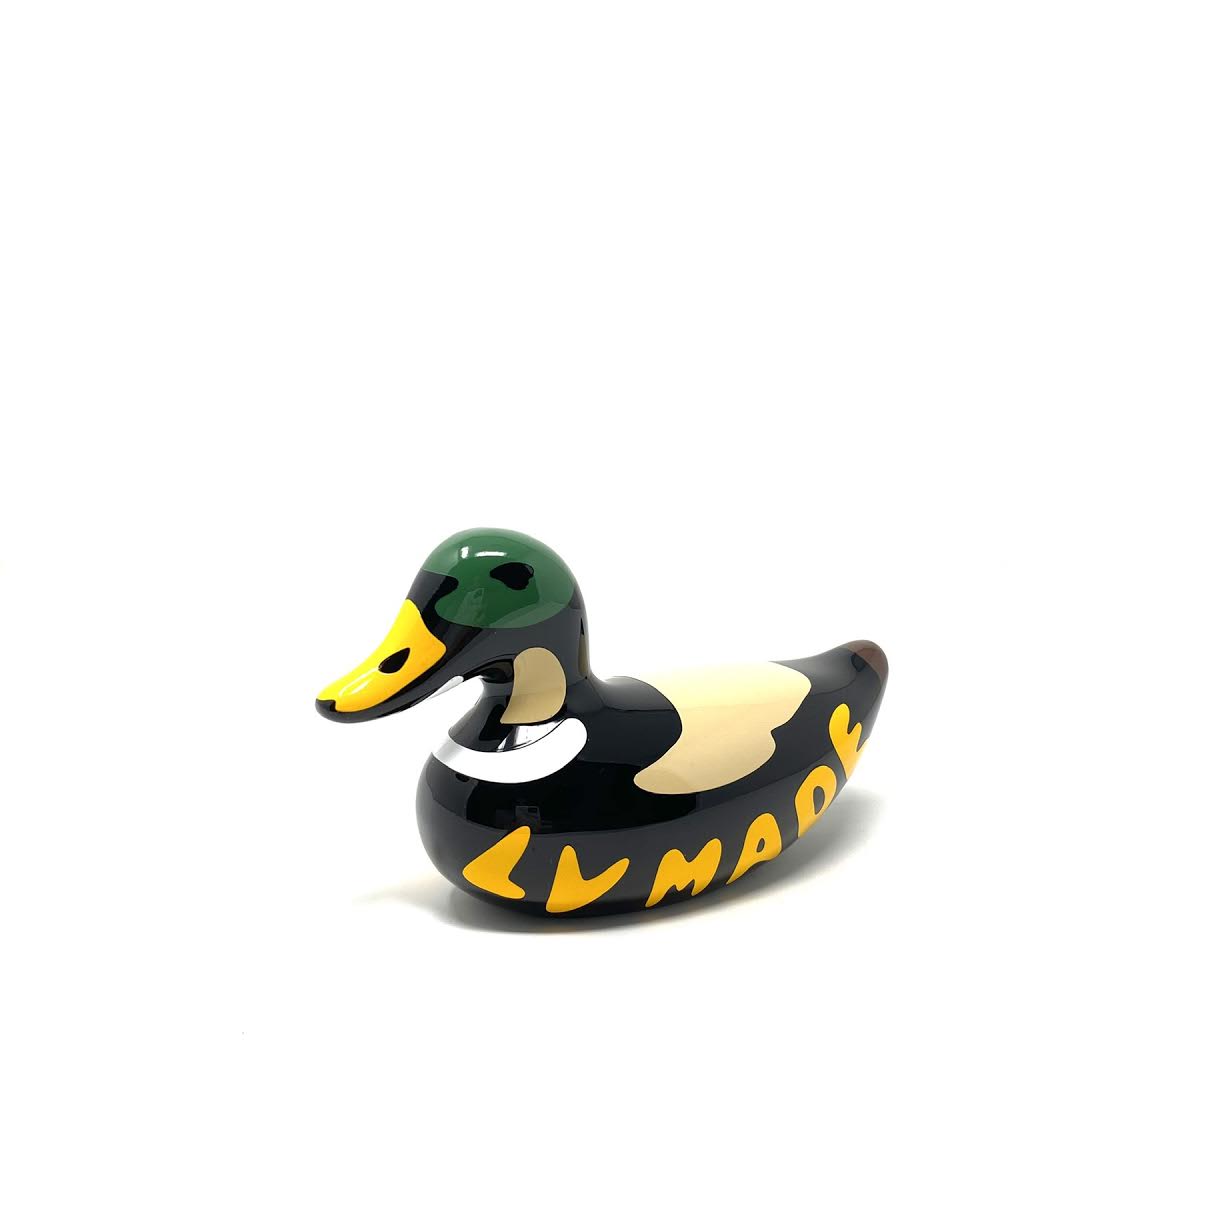 Ovrnundr on Instagram: Louis Vuitton x NIGO (2) Duck Bag official